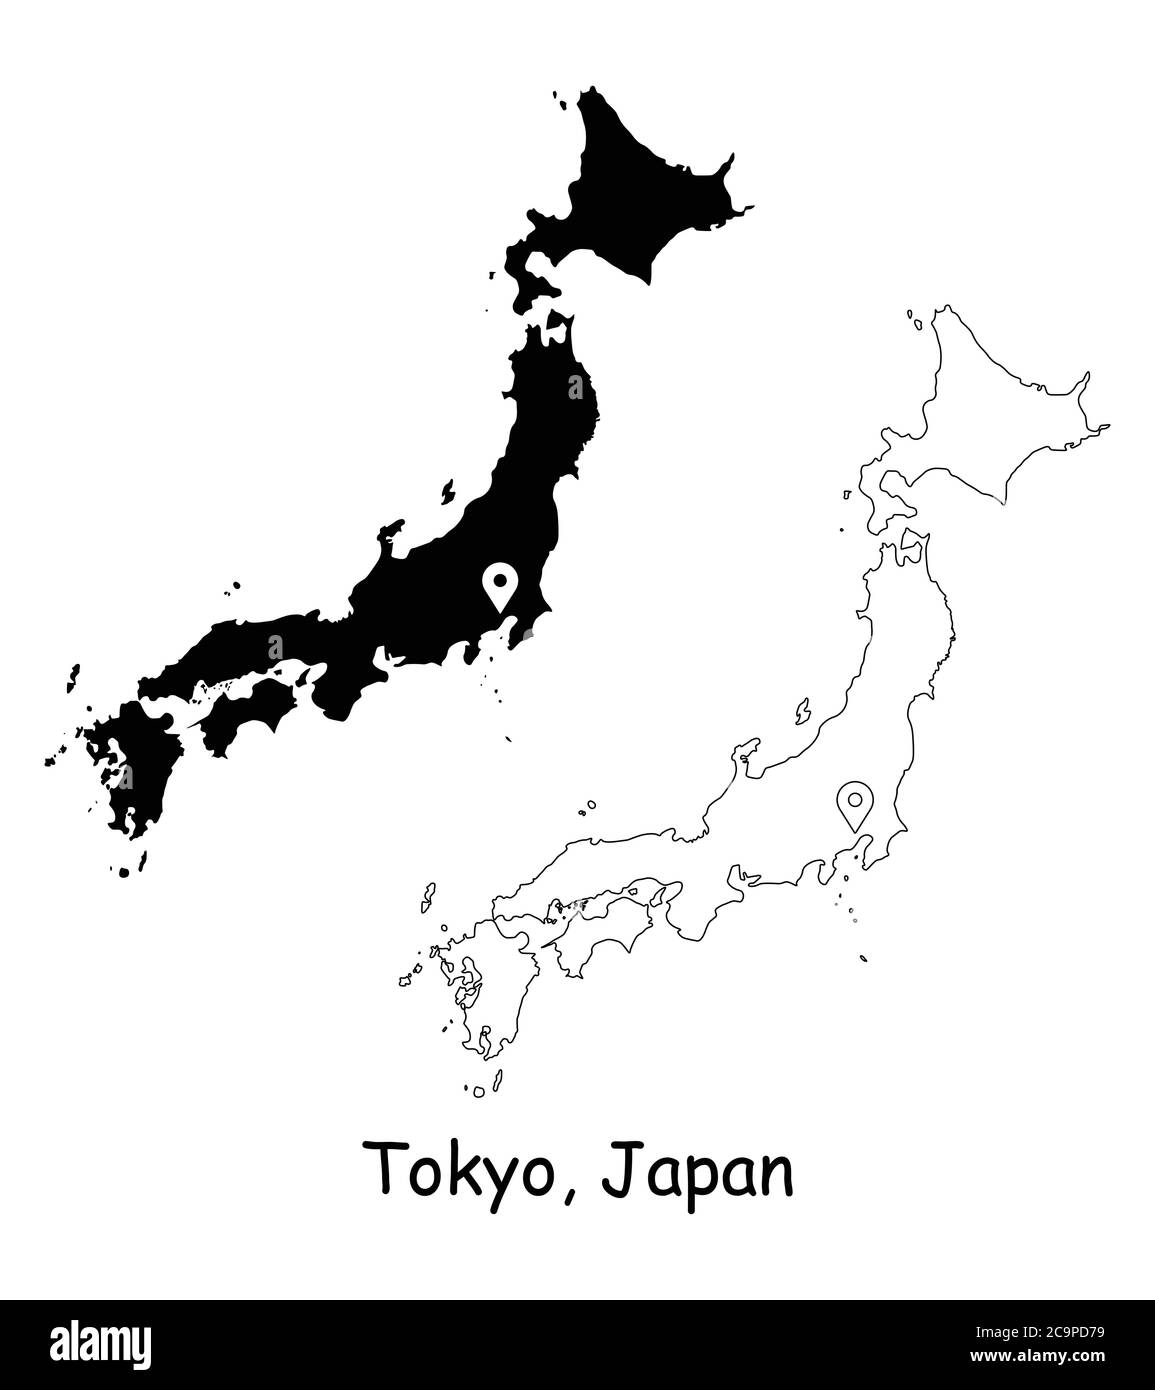 Tokyo Giappone. Mappa dettagliata del Paese con il pin della posizione sulla città capitale. Silhouette nera e mappe di contorno isolate su sfondo bianco. Vettore EPS Illustrazione Vettoriale